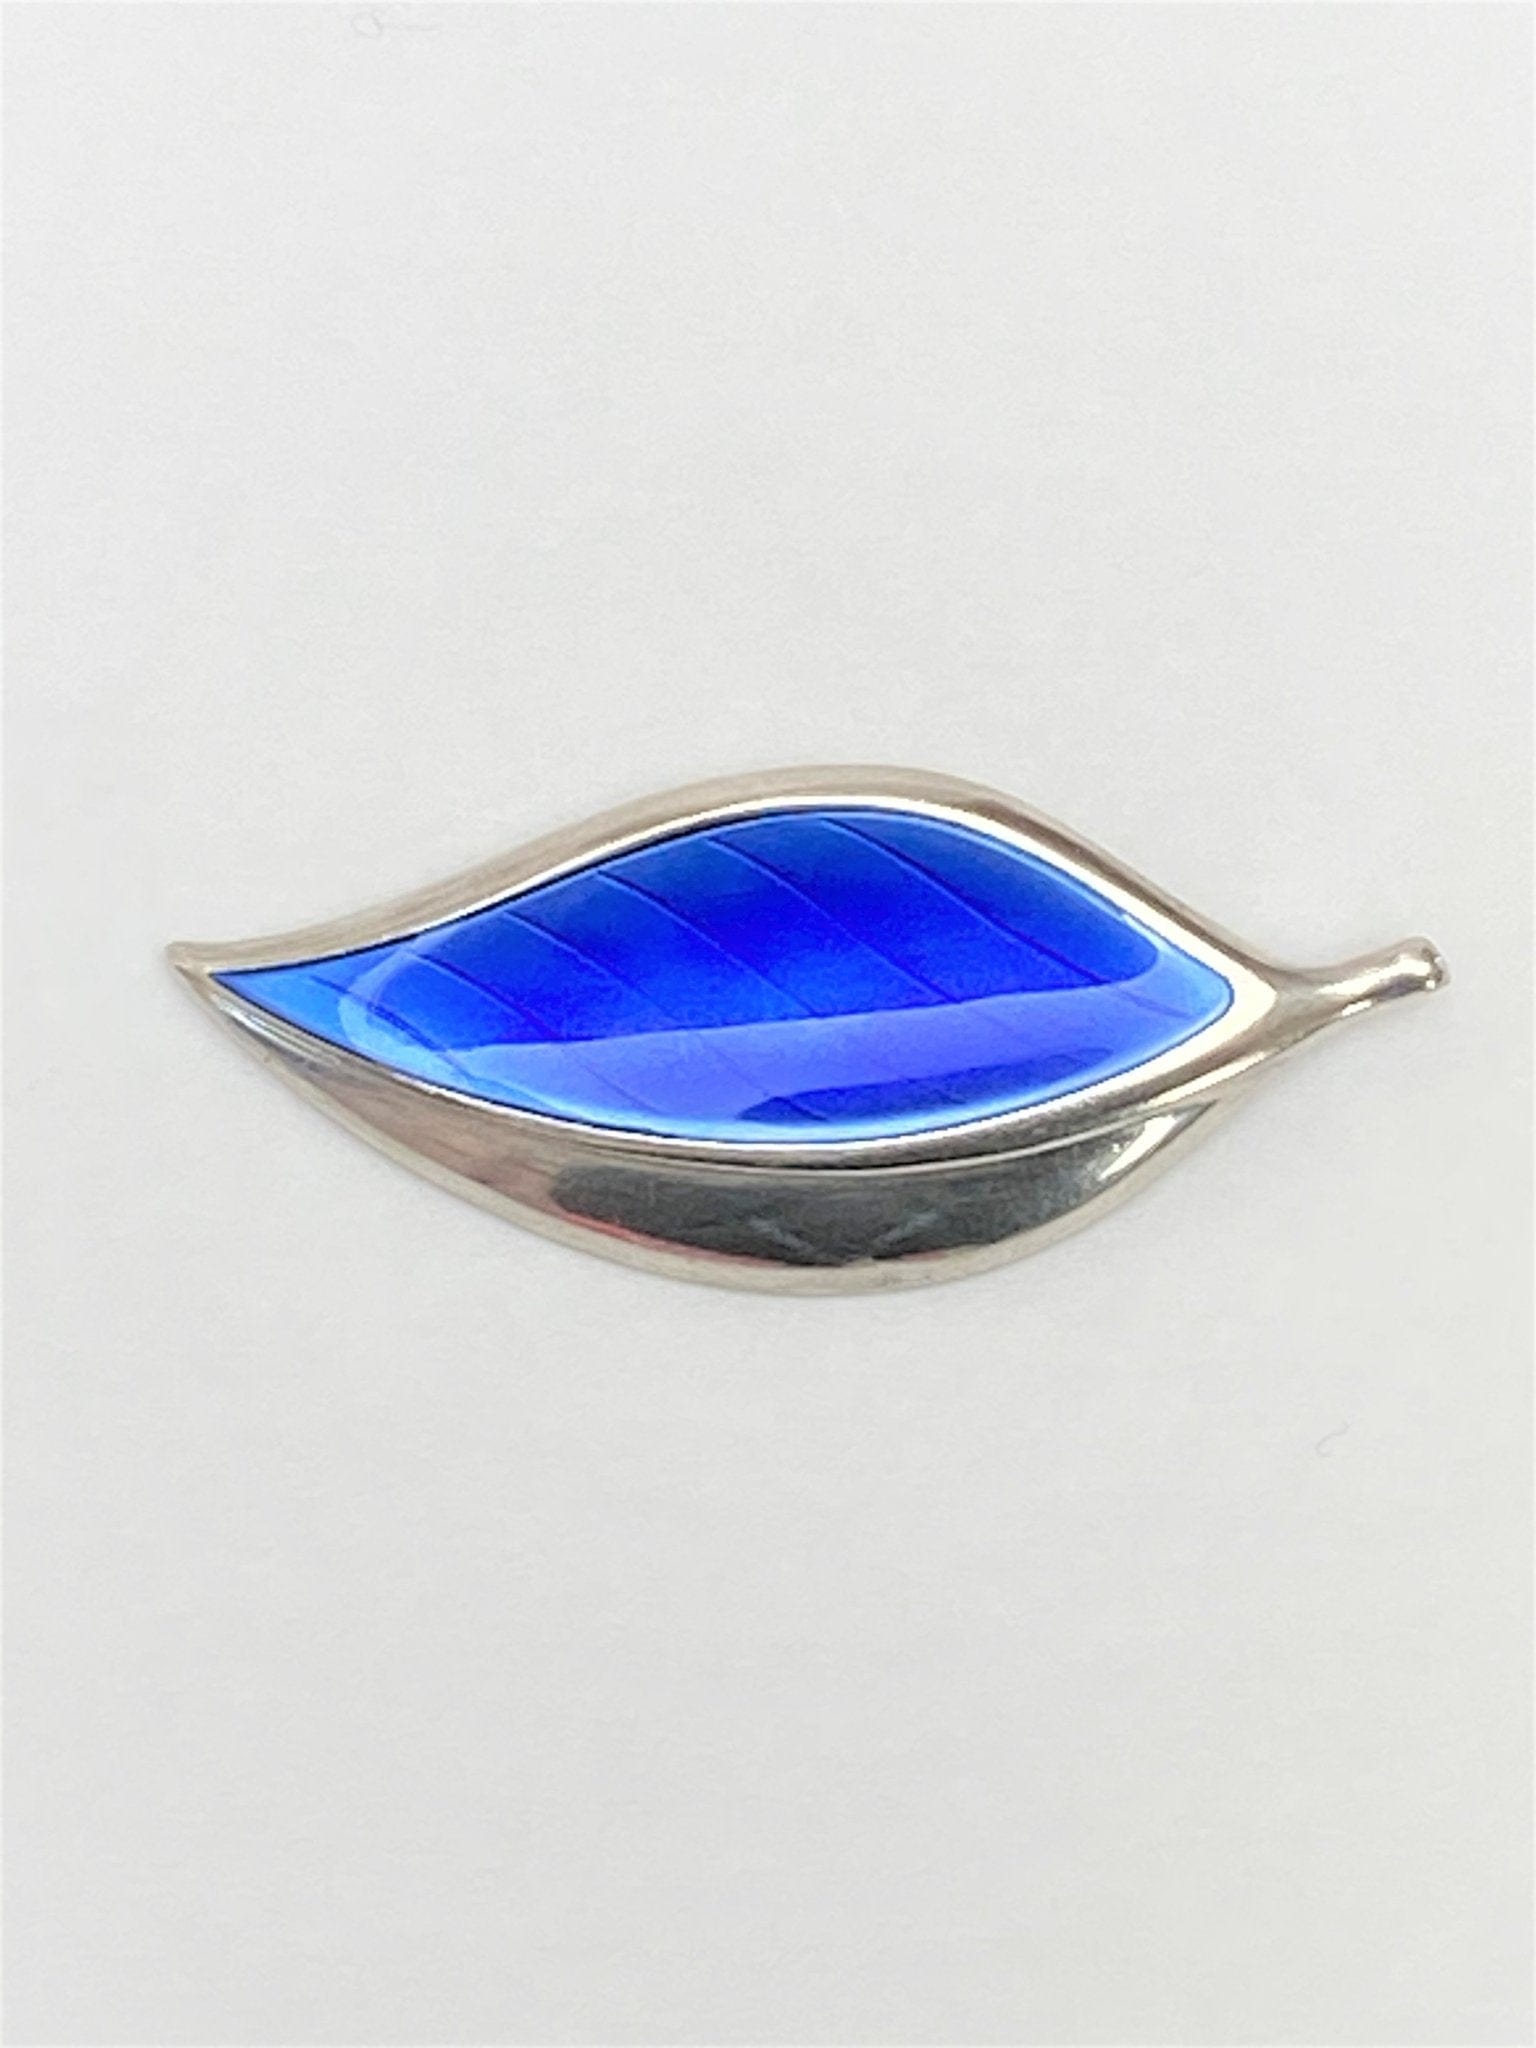 David Andersen Jewelry VTG David Andersen 925SS & Royal Blue Enamel Leaf Converter Brooch Rare